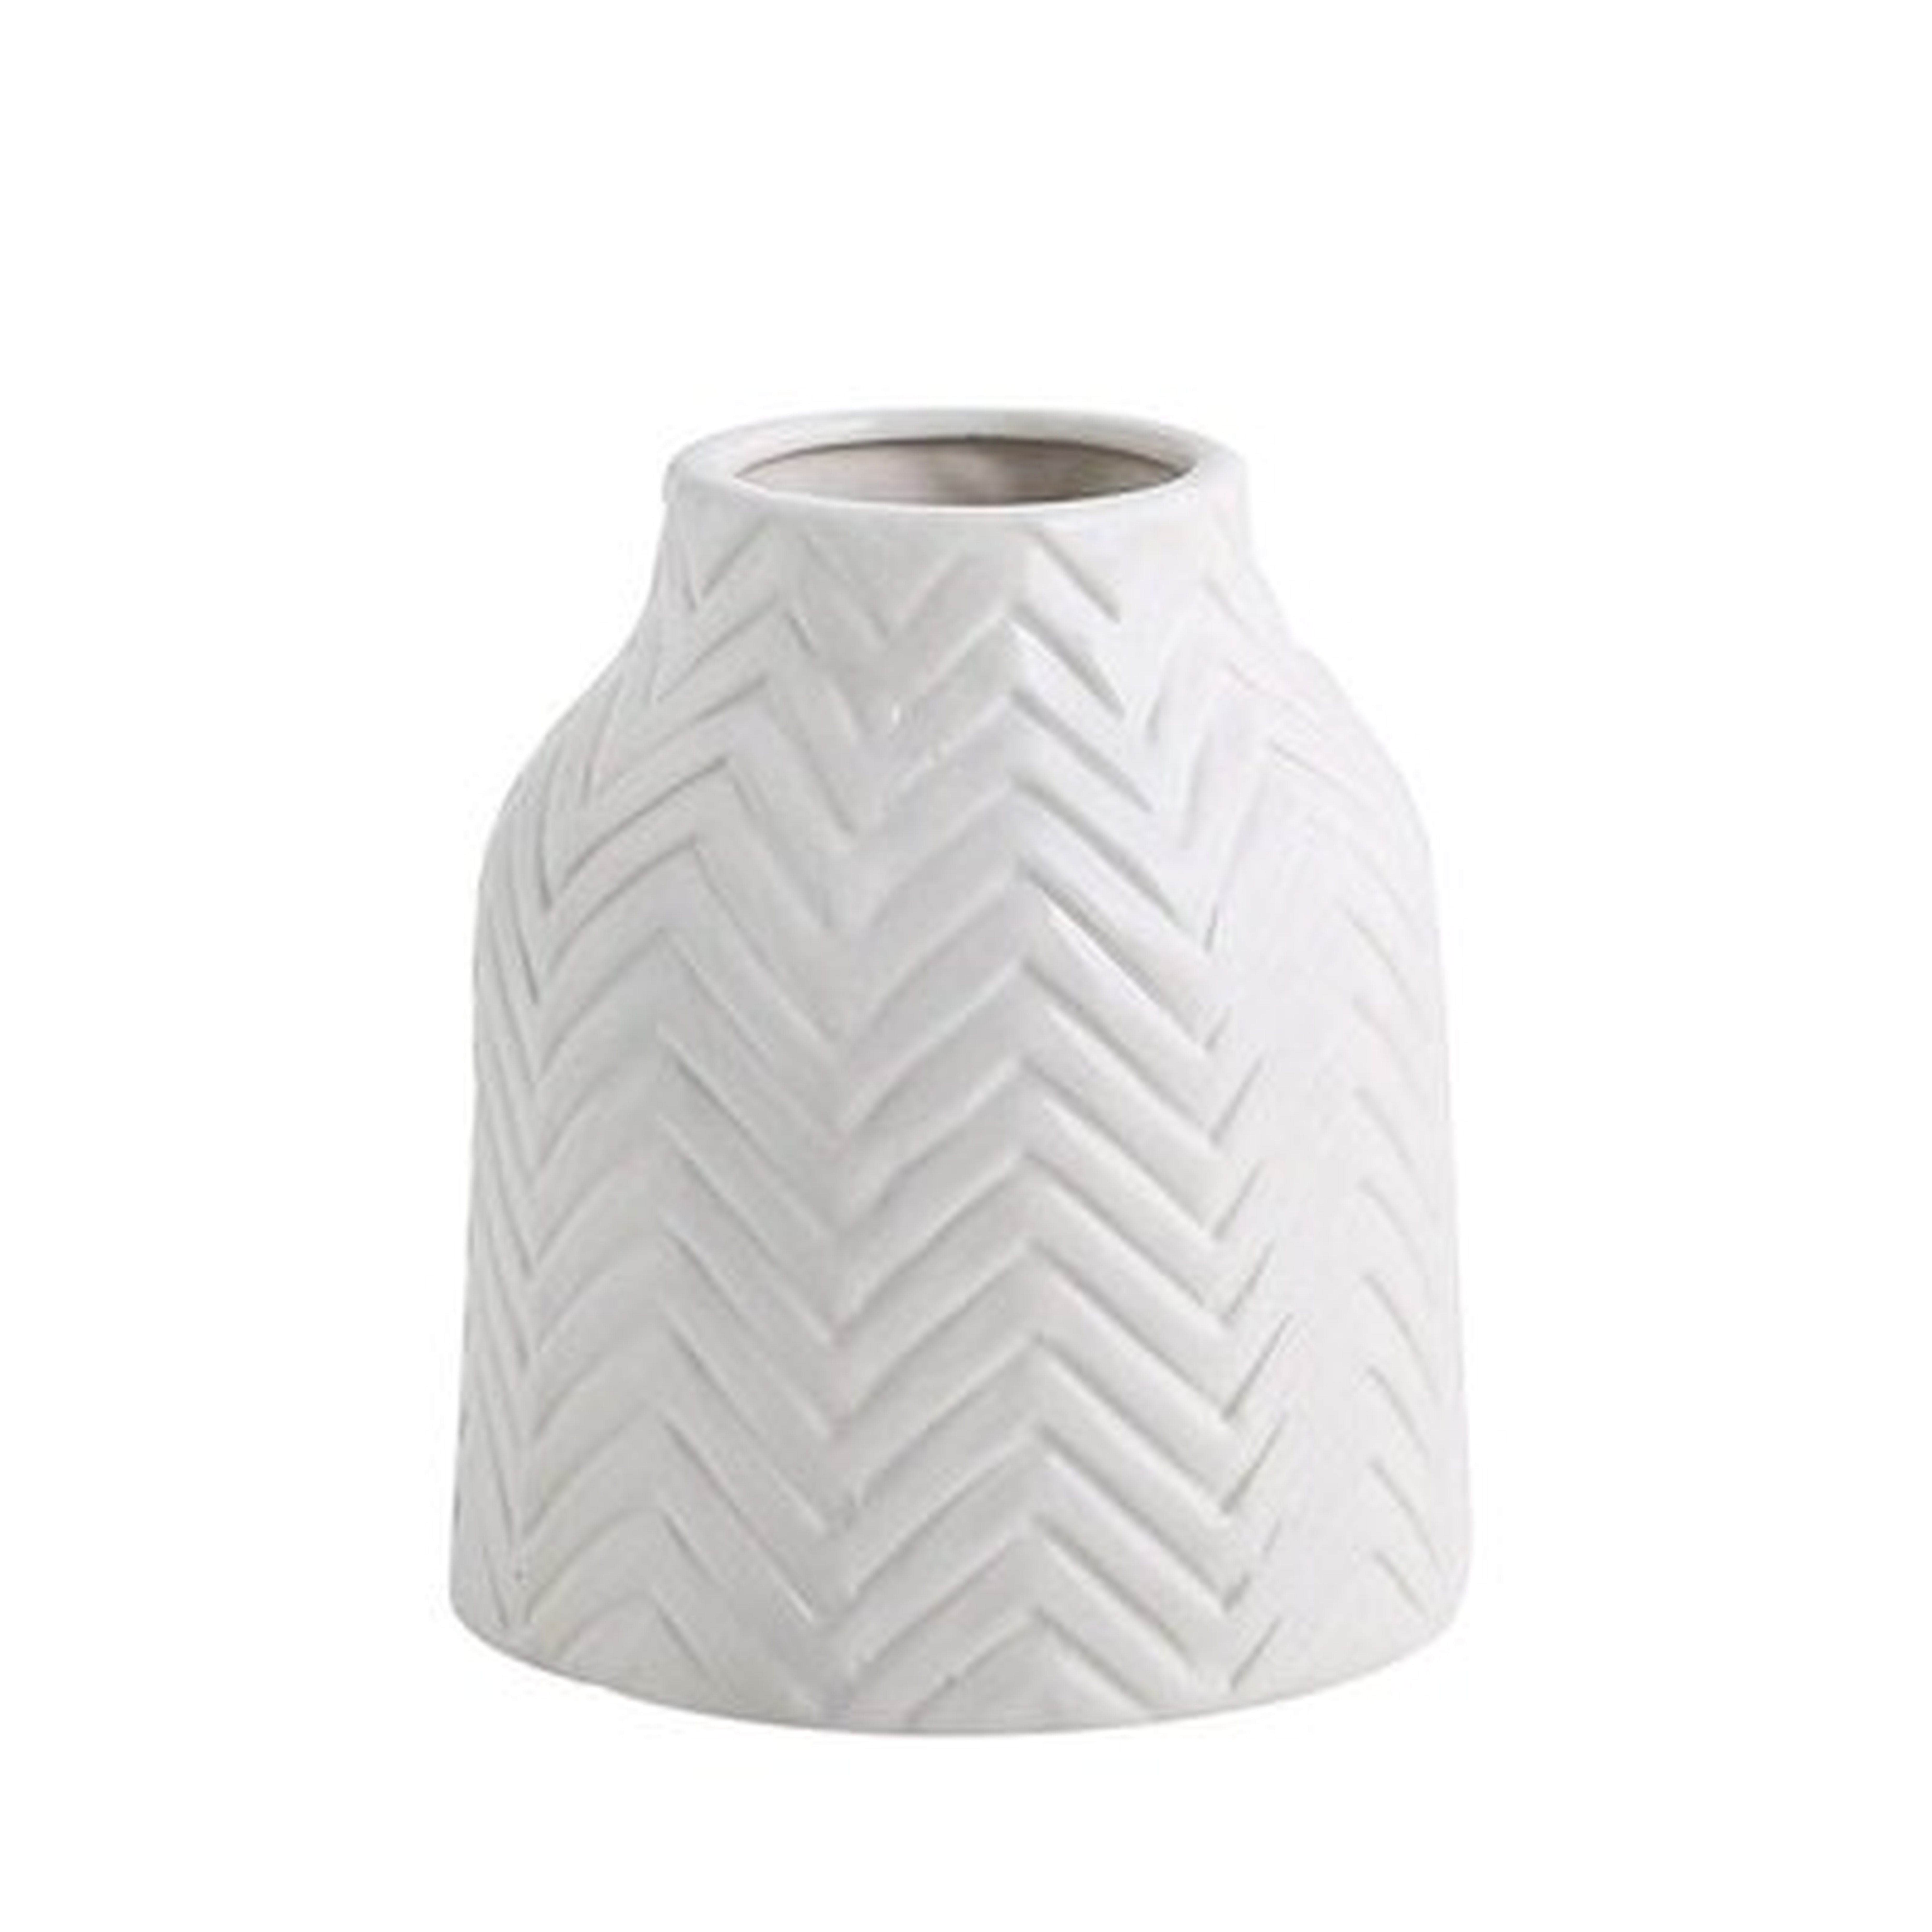 Ceramic Vases,White Ceramic Vase,Vase Pottery Vase Handmade Cute Flower Vase For Home Decor (Small) - Wayfair